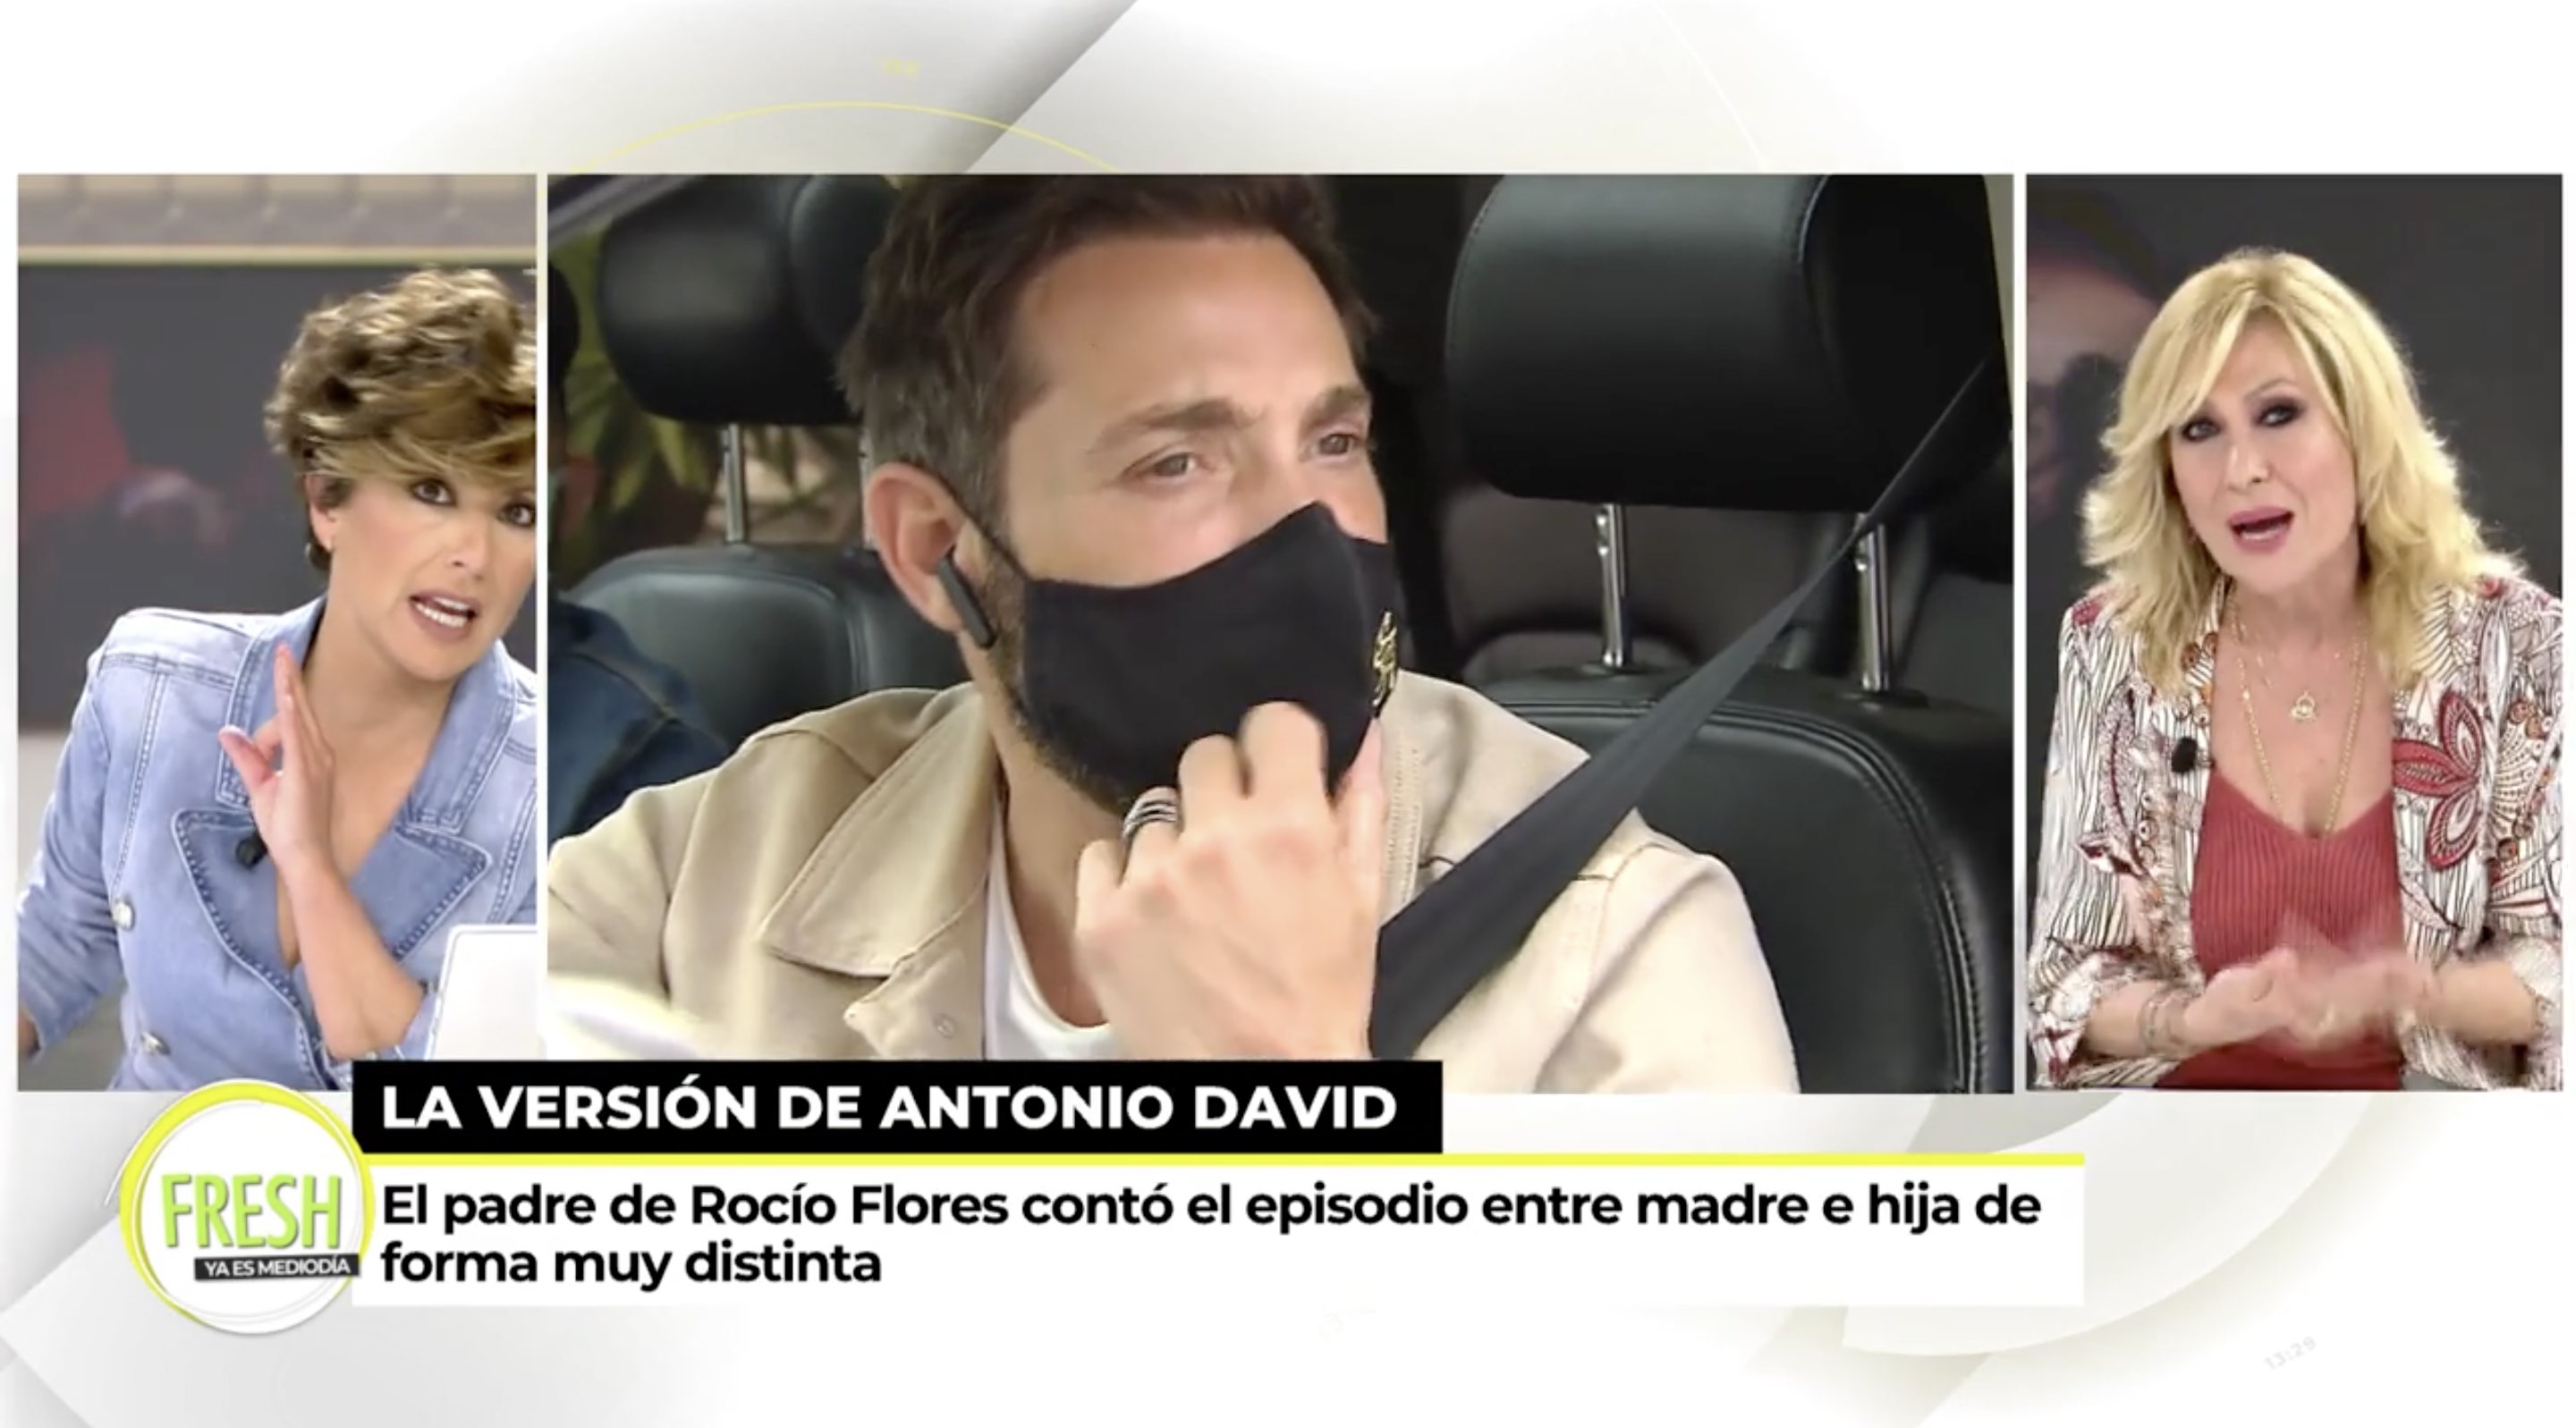 Rosa Benito, indignada con las declaraciones de Antonio David 2 años después | Foto: Telecinco.es